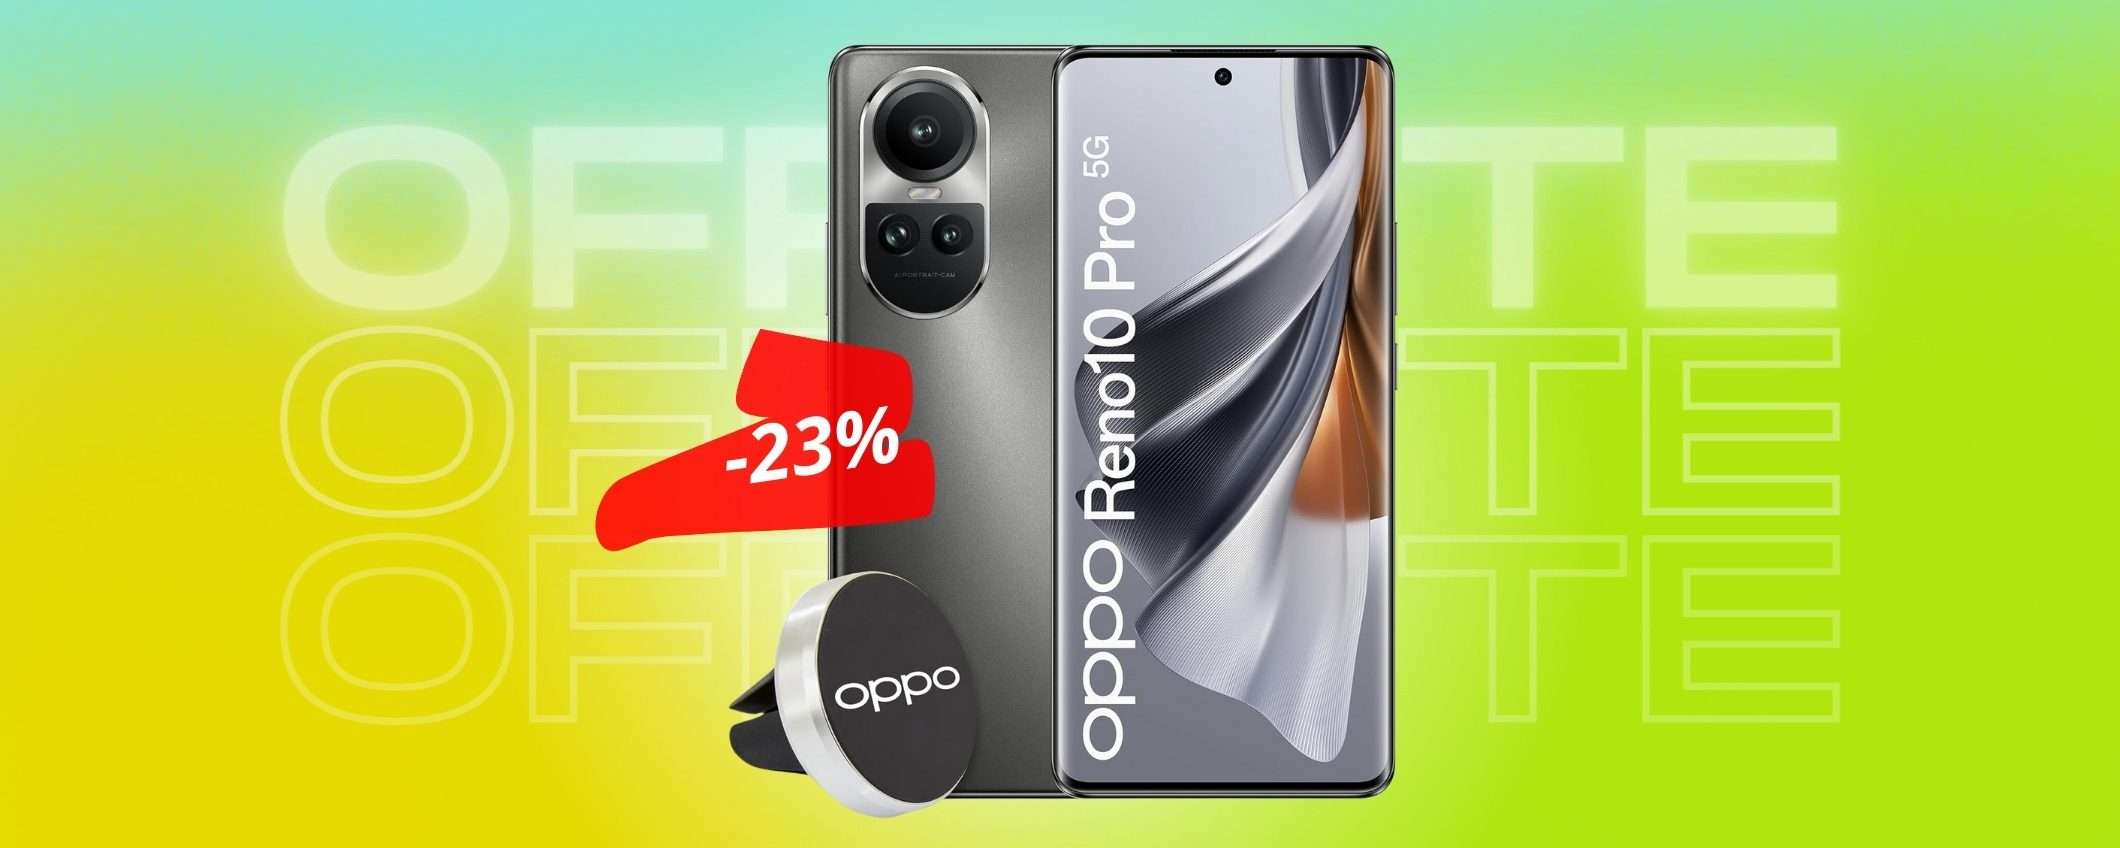 OPPO Reno10 Pro è lo smartphone SUPREMO, lo provi e ti innamori (-23%)